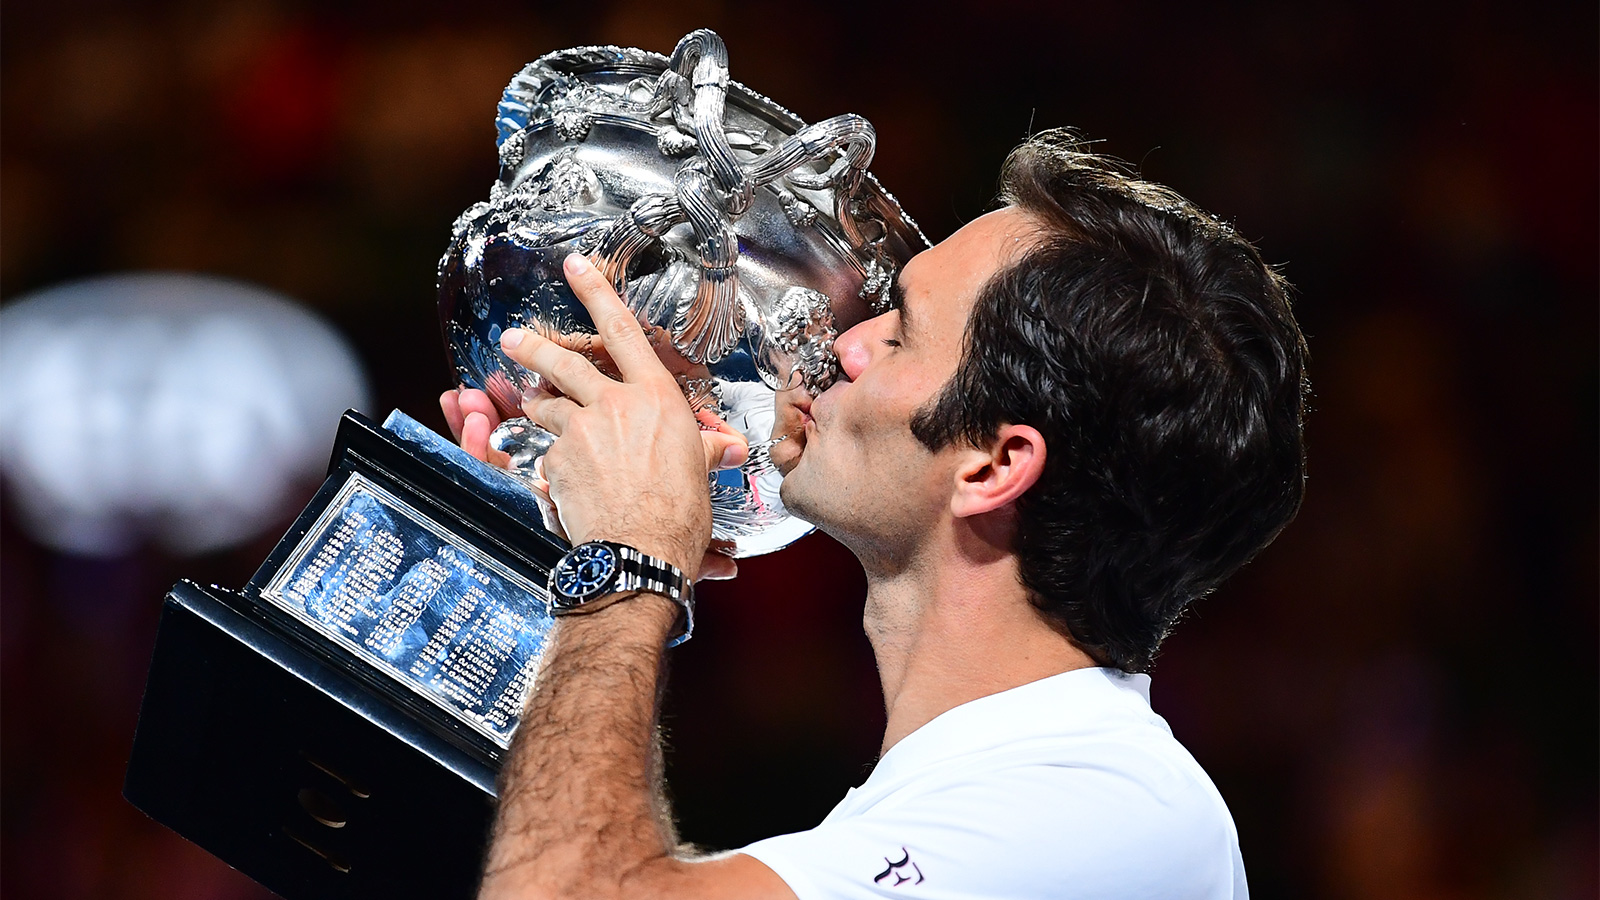 Roger Federer 2018 Australian Open - Federer Wins 20th Grand Slam Title